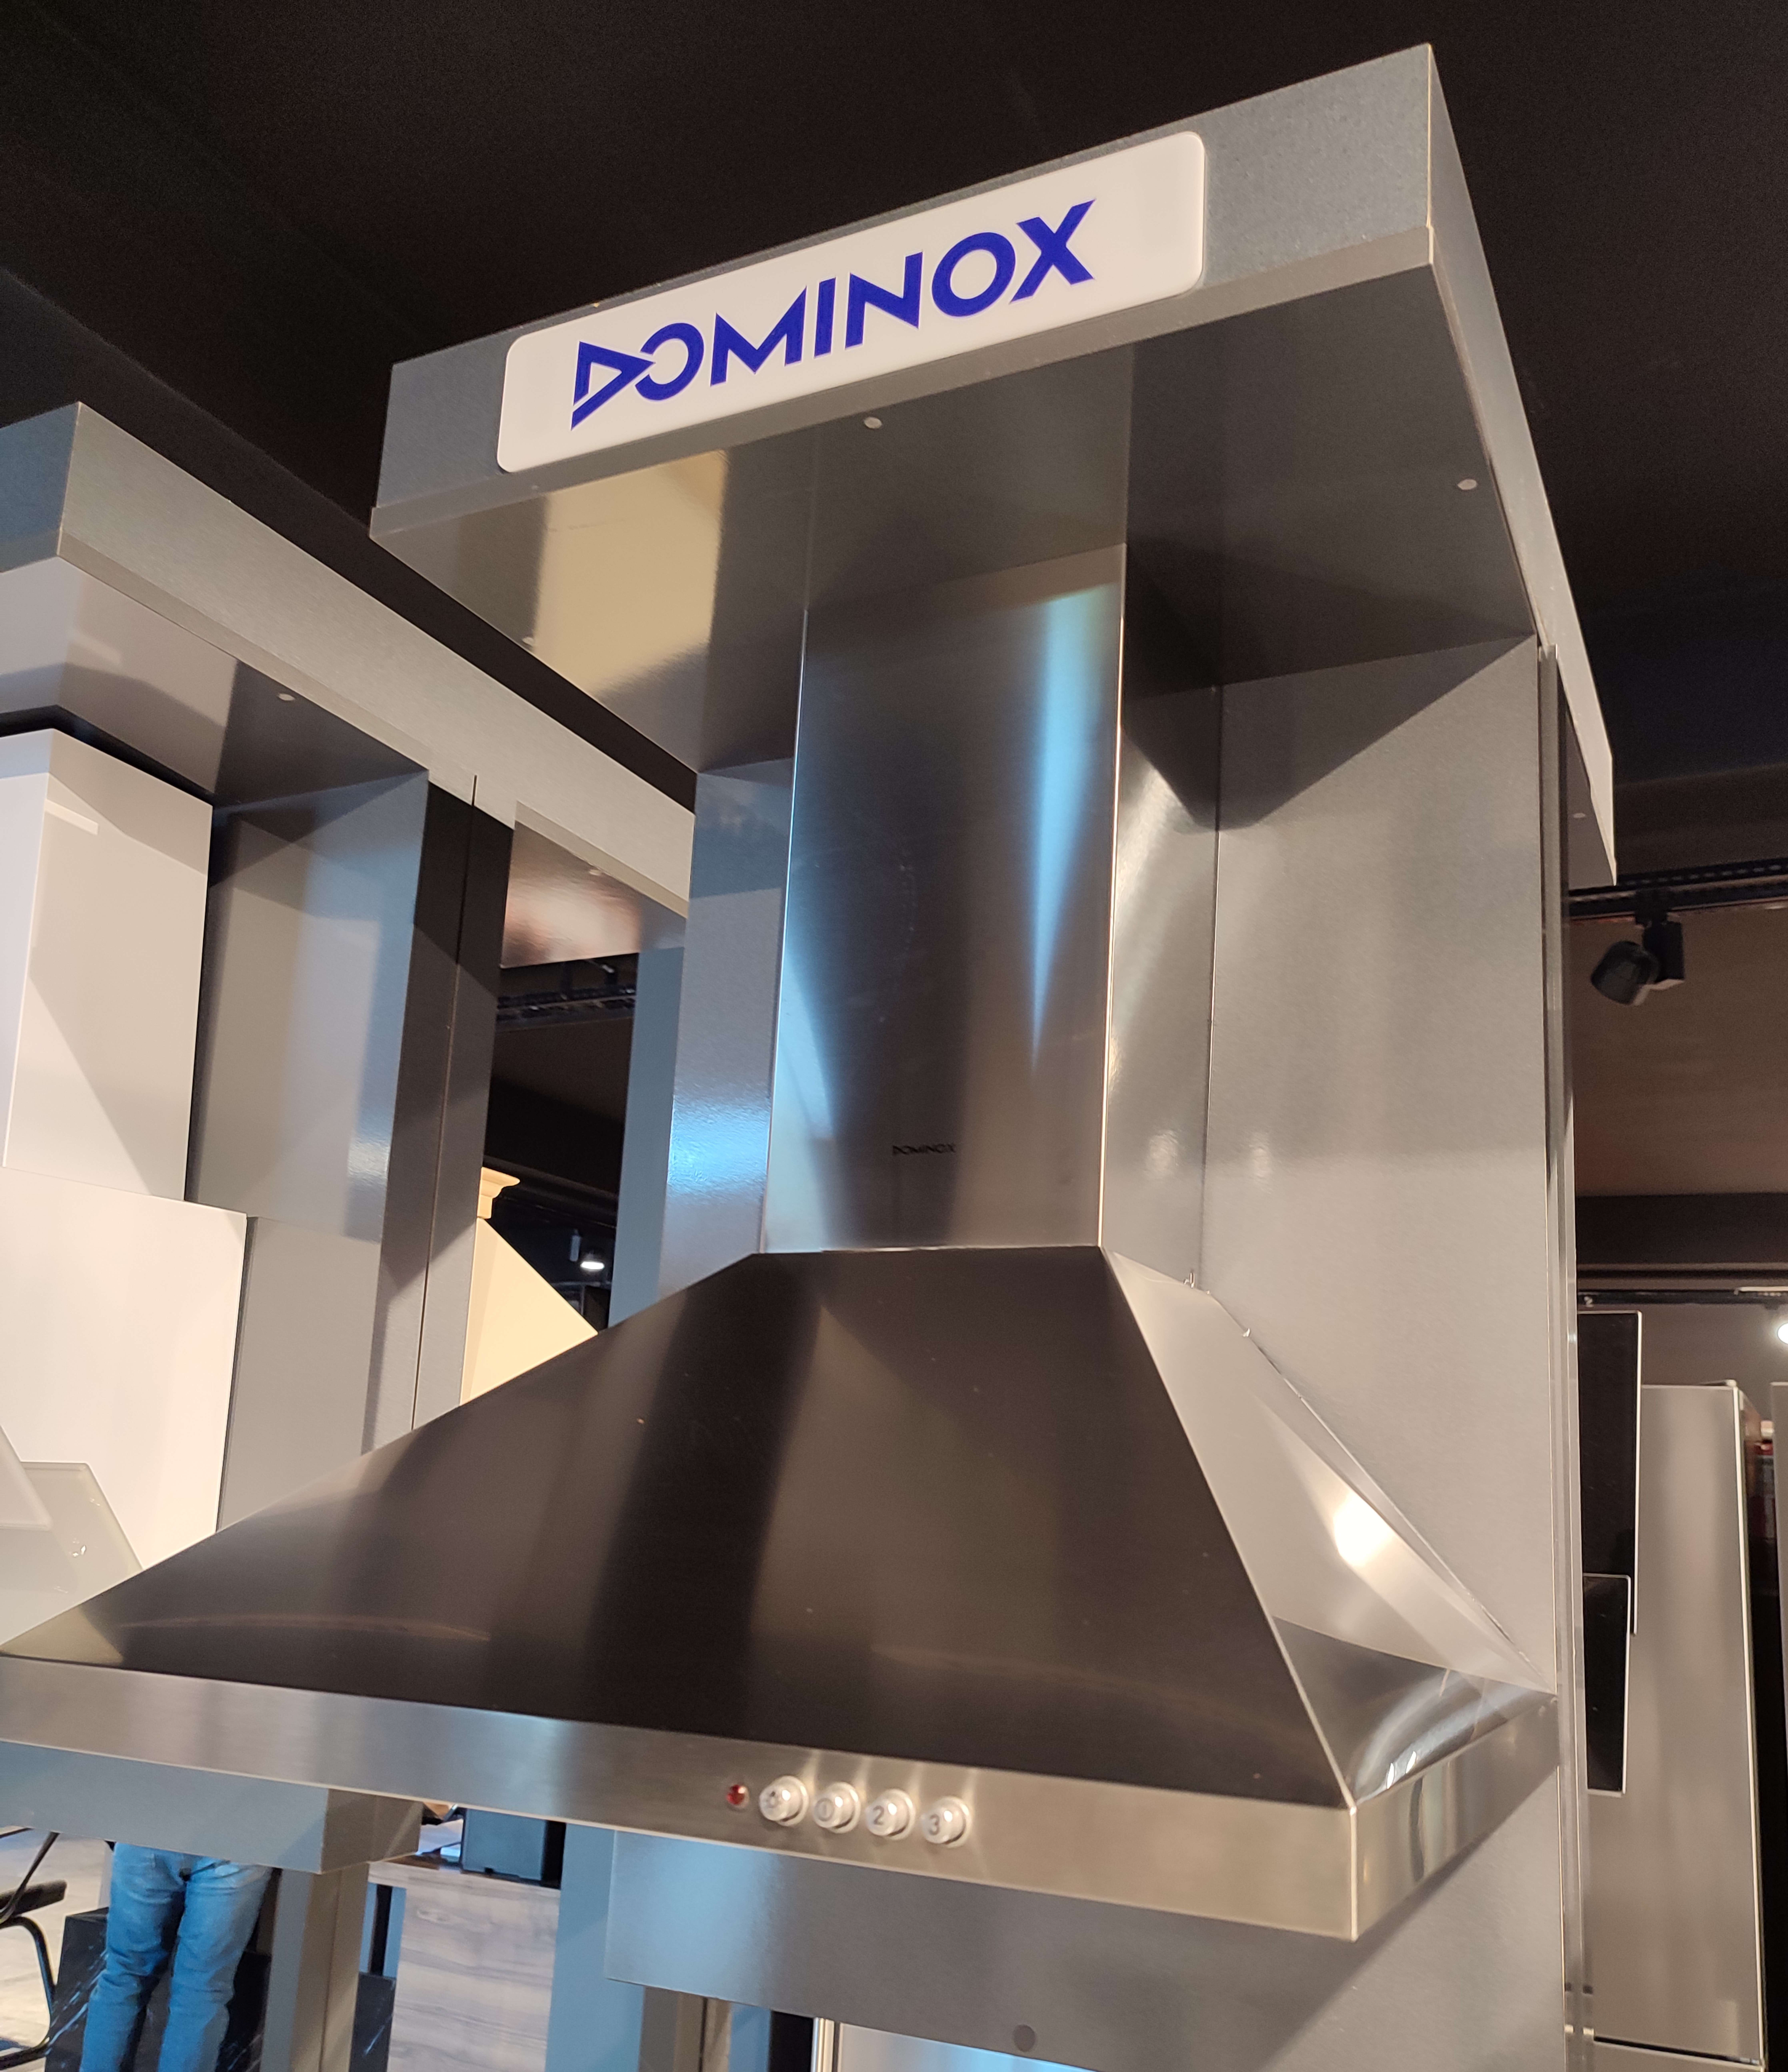 Dominox DA 621 D XS Inox Duvar Tipi Davlumbaz - Teşhir Ürün